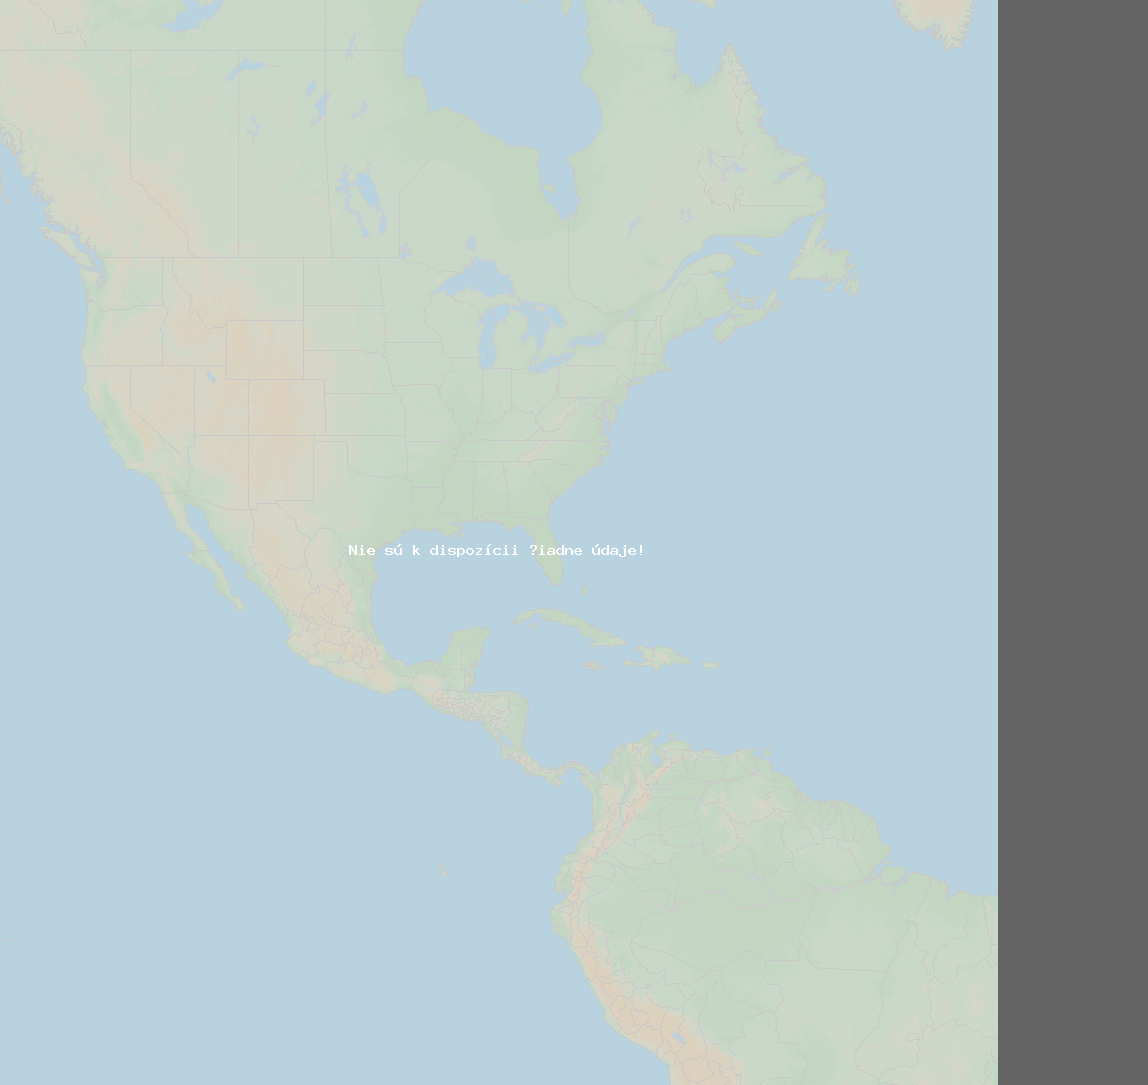 Pomer bleskov (Stanica Meteor O-I  'North') North America 2020 Apríl